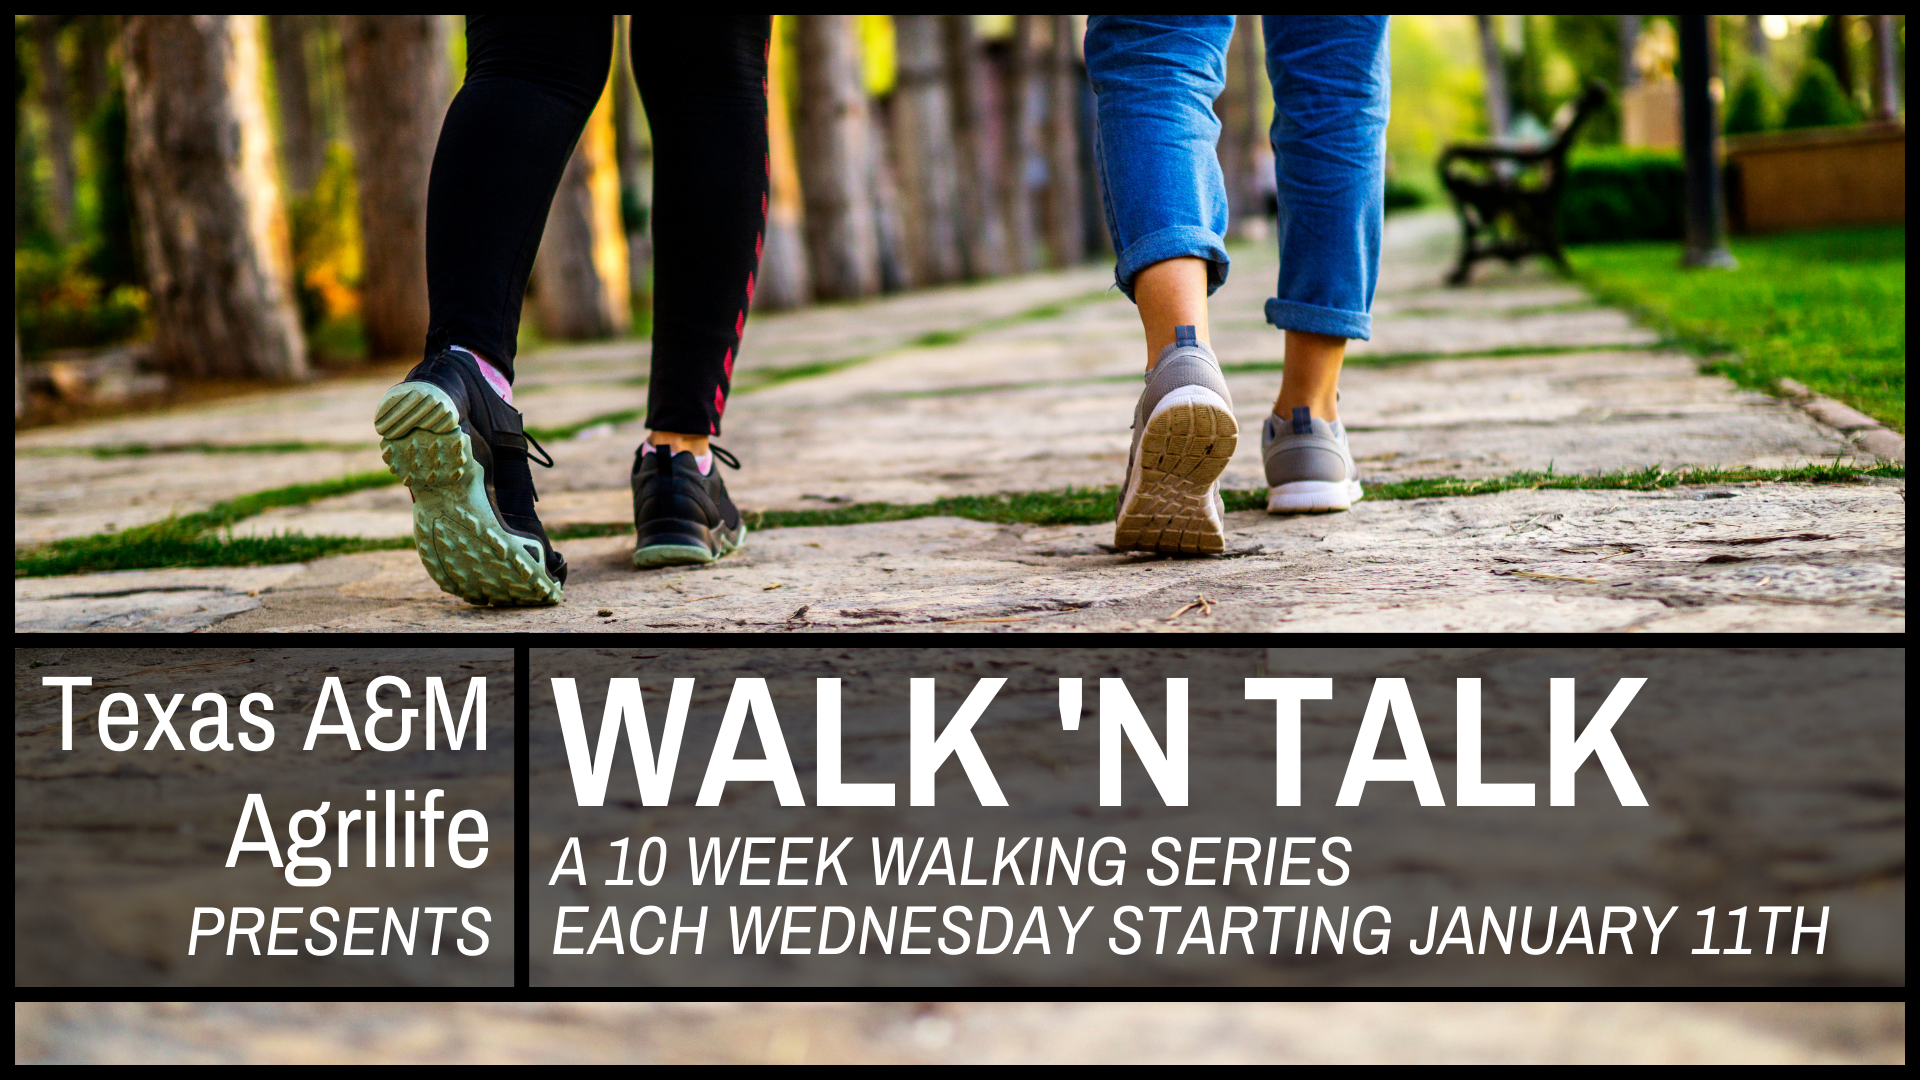 Texas A&M AgriLife Walk N Talk series, starting January 11th at 6pm